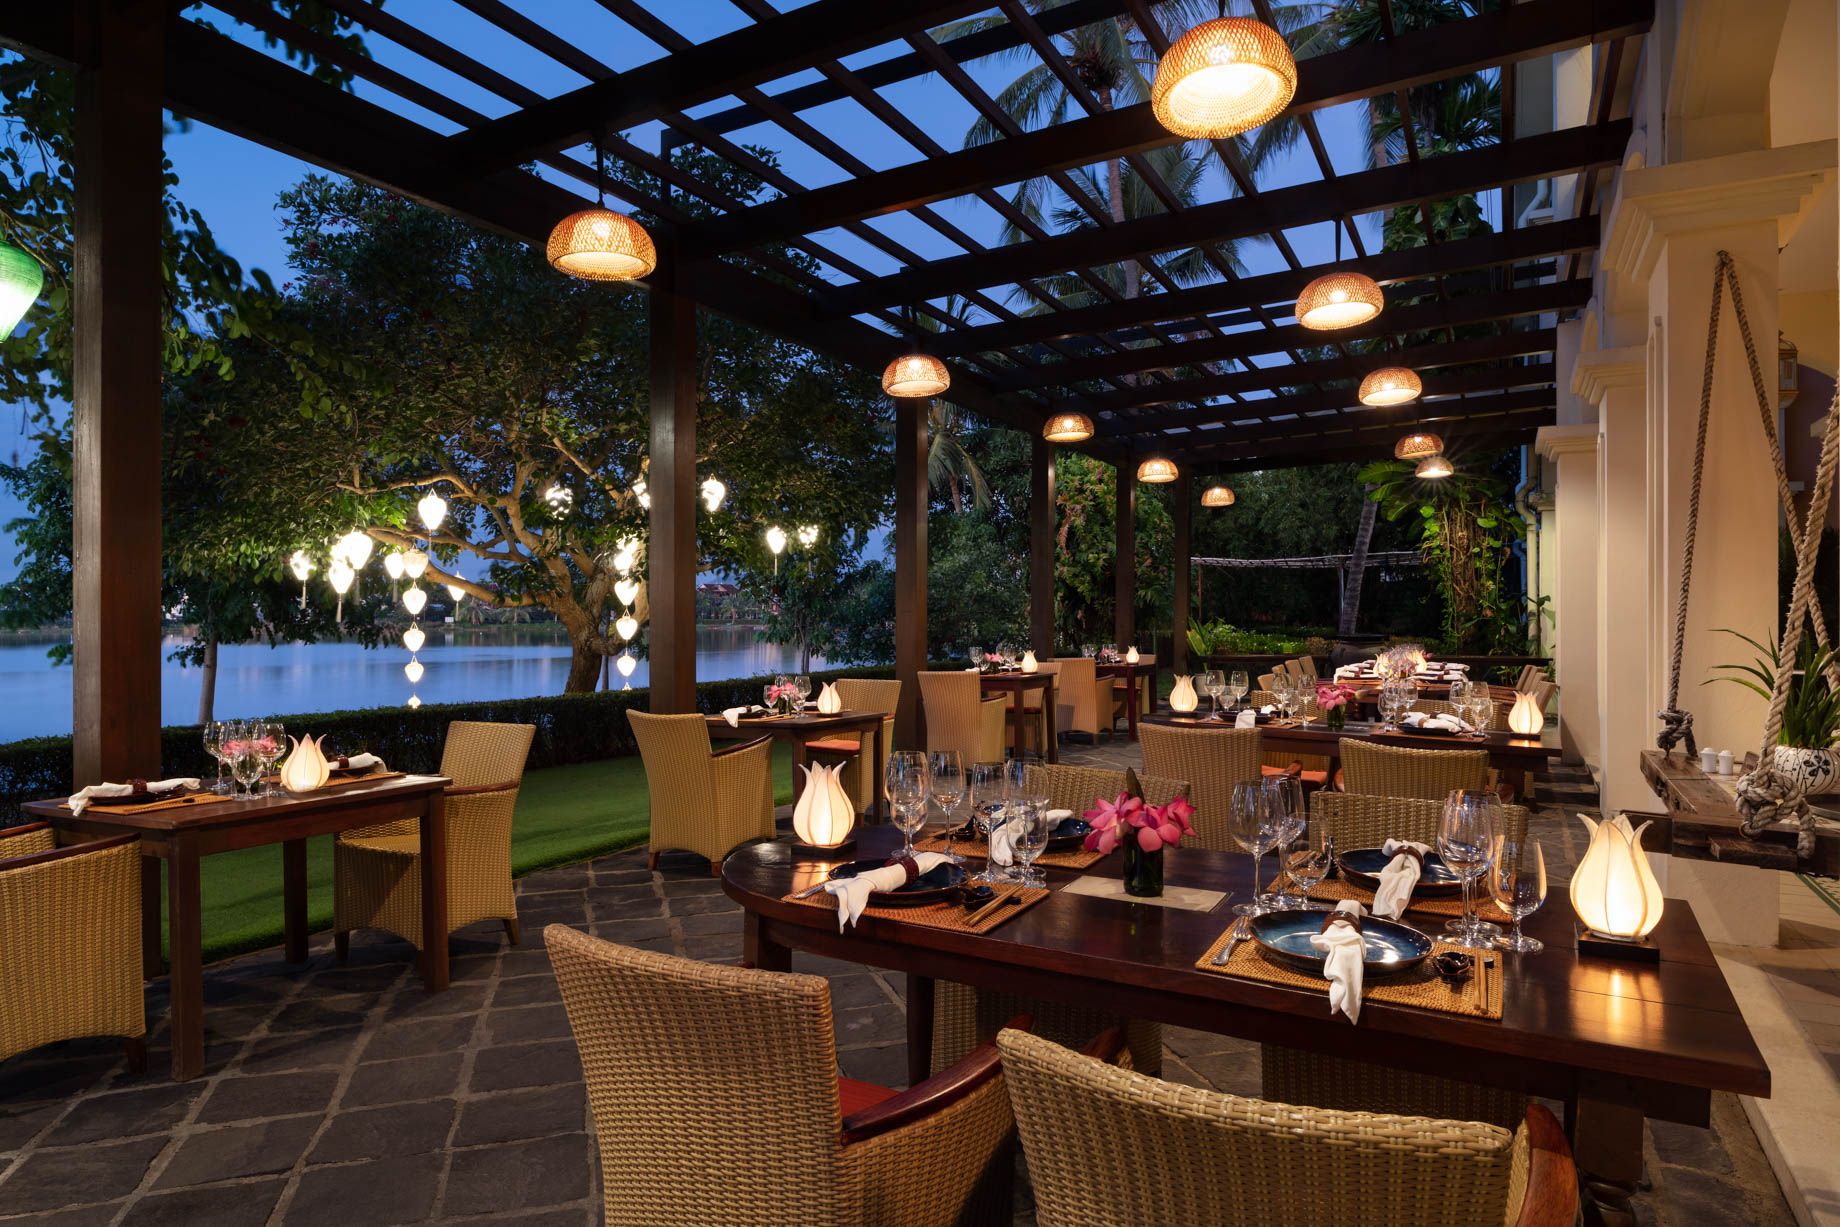 Anantara Hoi An Resort – Hoi An City, Vietnam – Hoi An Riverside Restaurant